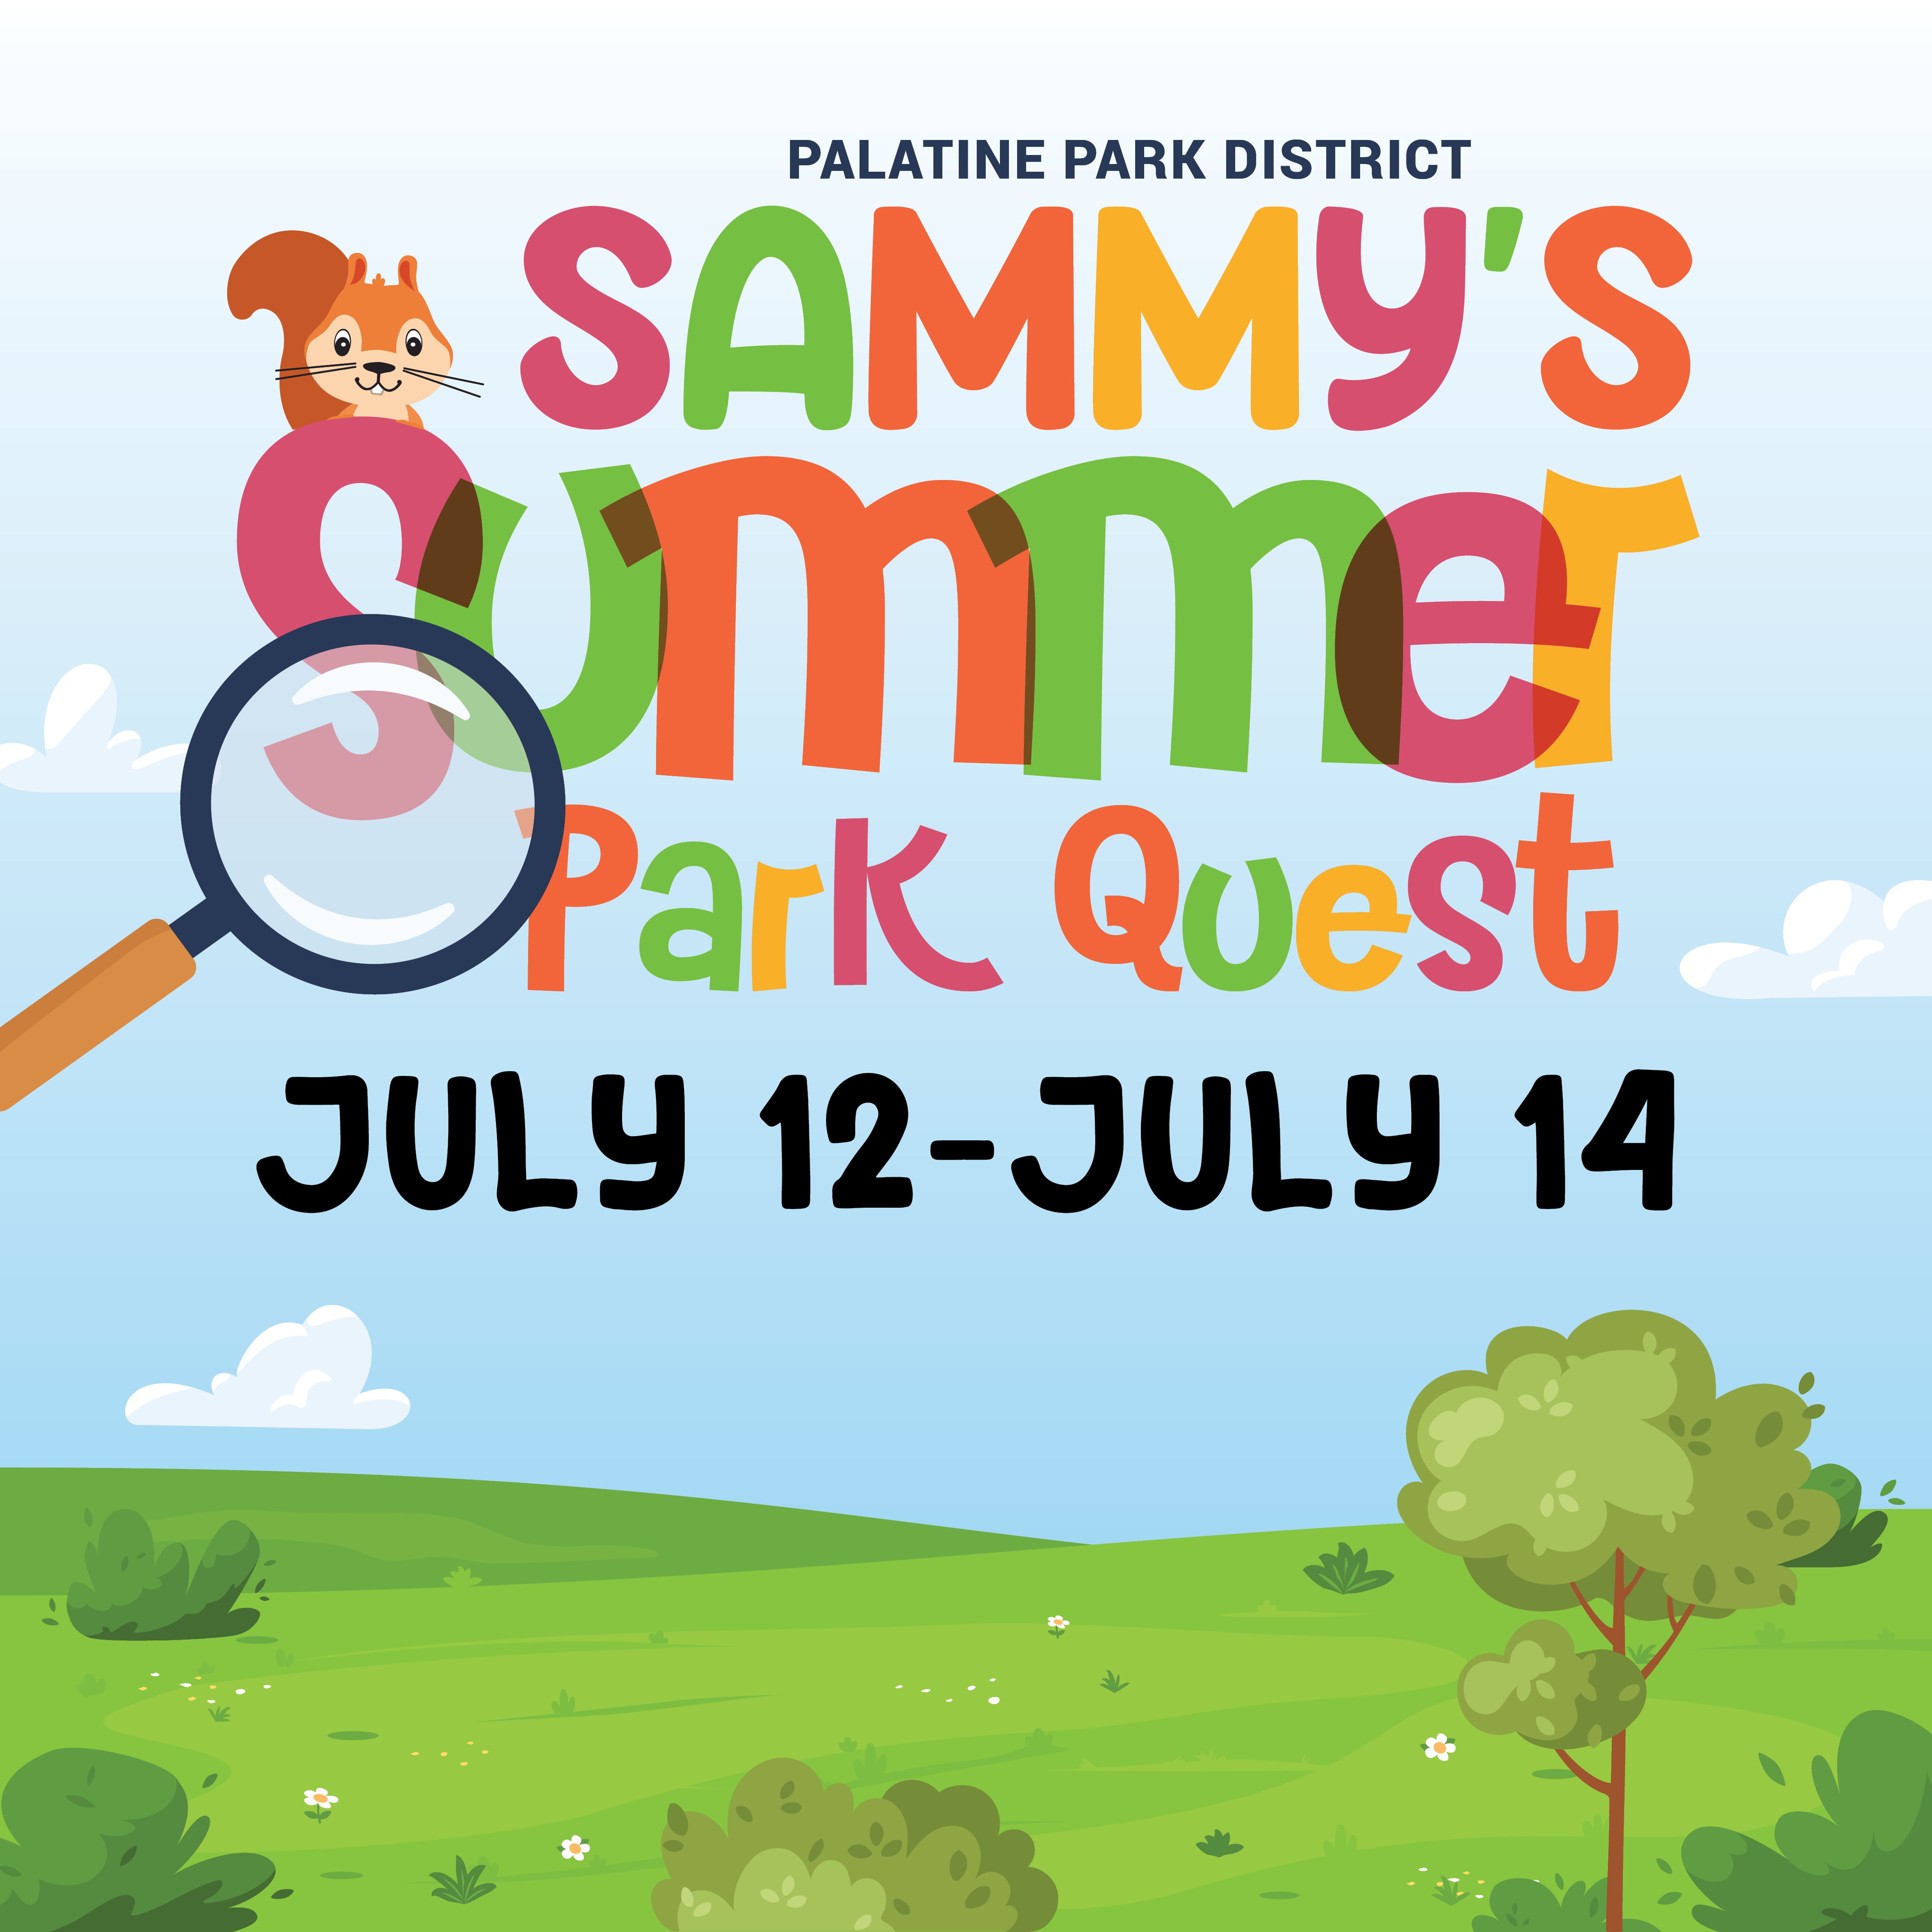 Sammy’s Summer Park Quest